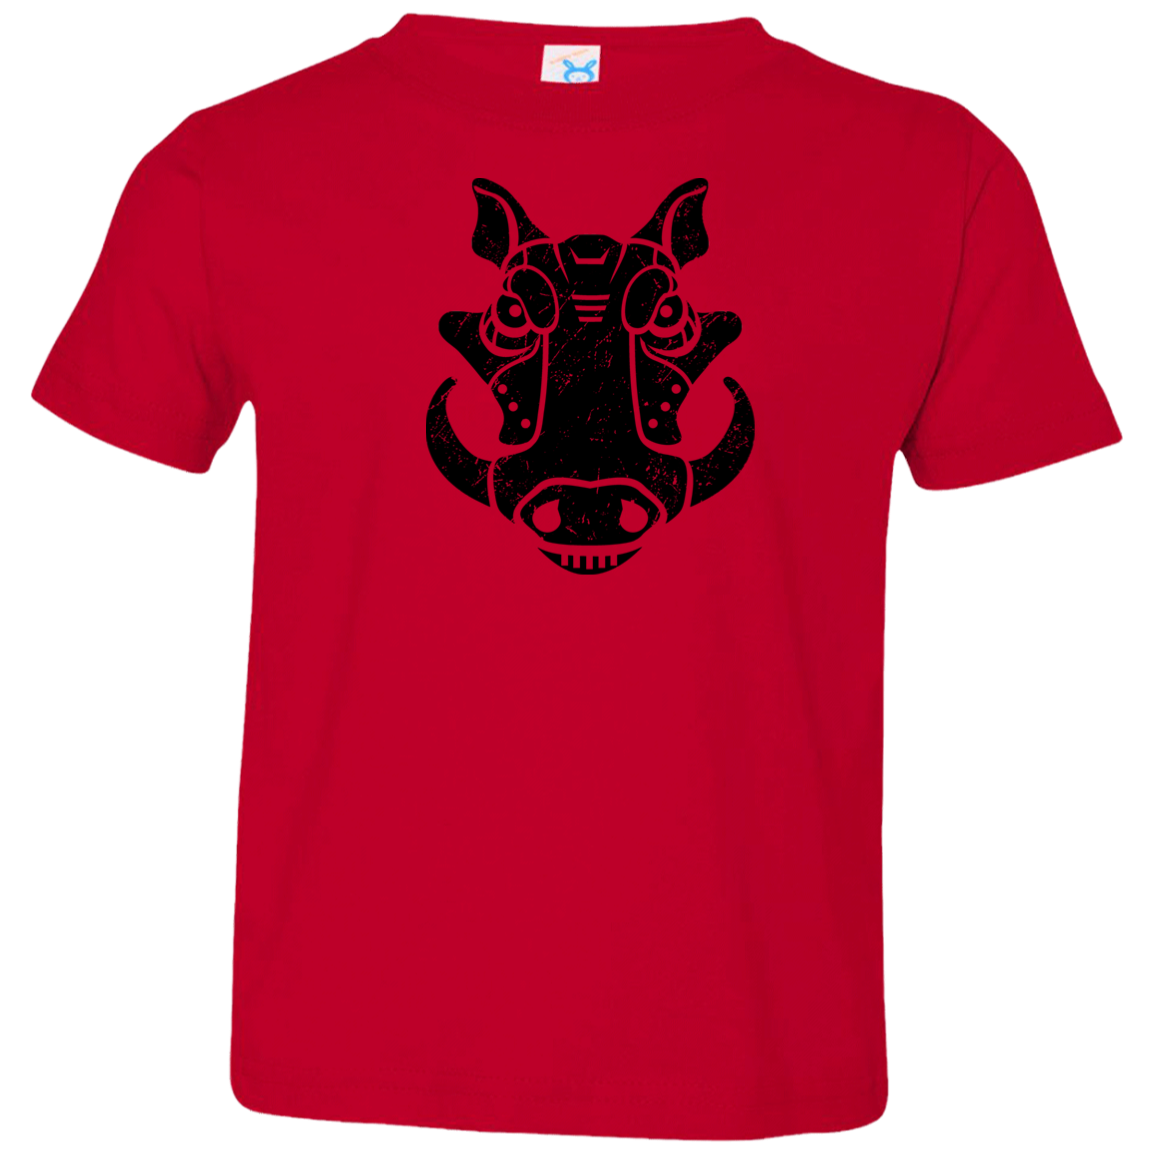 Black Distressed Emblem T-Shirt for Toddlers (Warthog/Bumper)